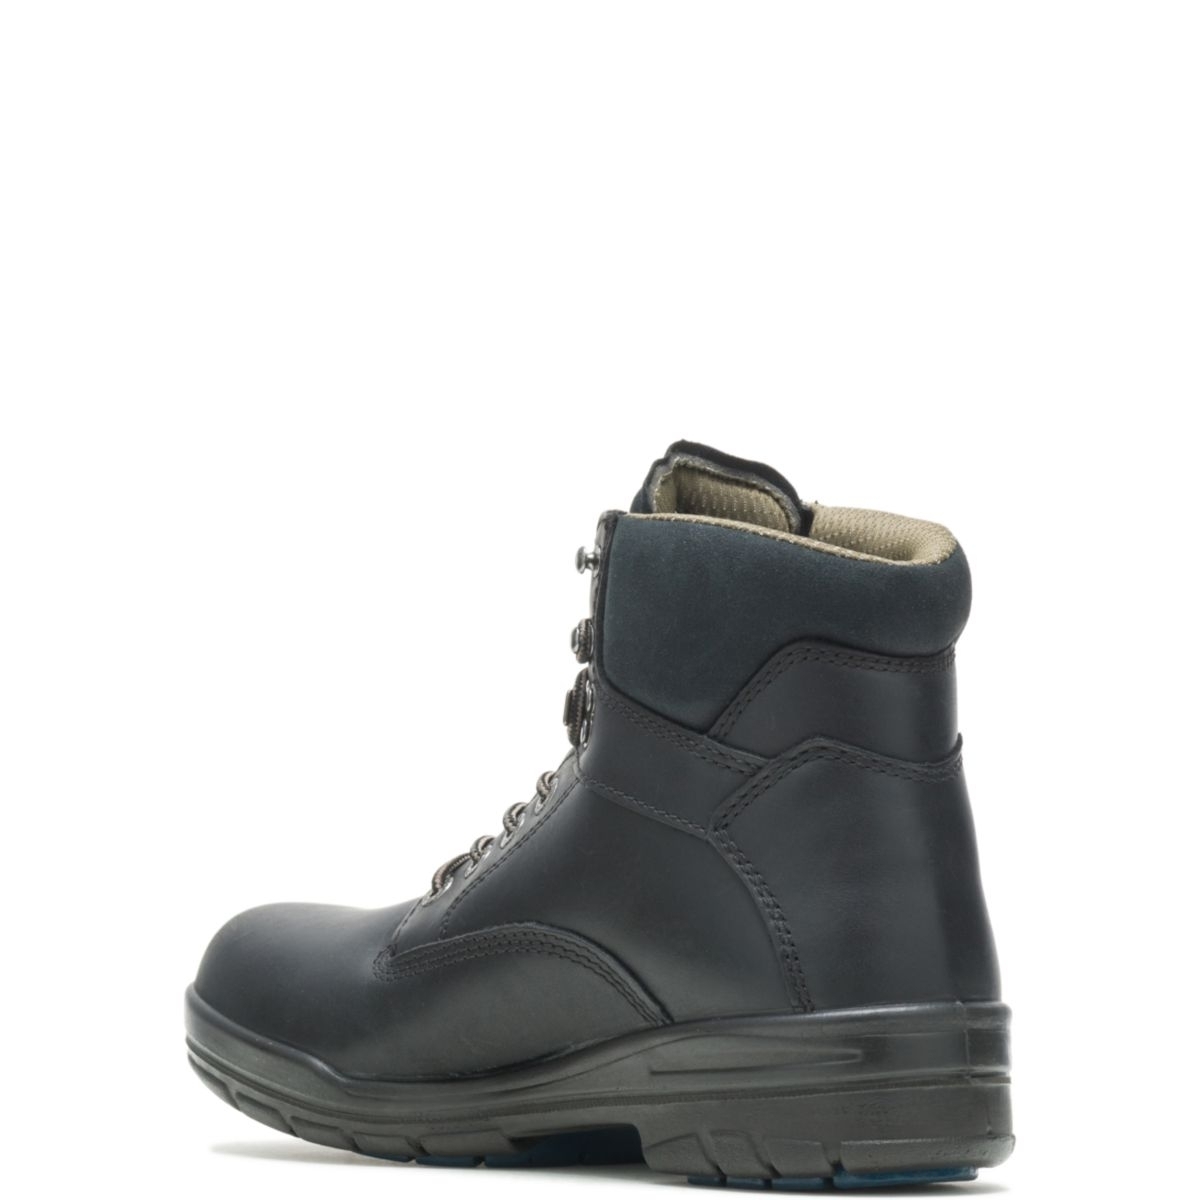 WOLVERINE Men's 6 DuraShocksÂ® Slip Resistant Direct-Attached Lined Soft Toe Work Boot Black - W03123 14 WIDE BLACK - BLACK, 9.5